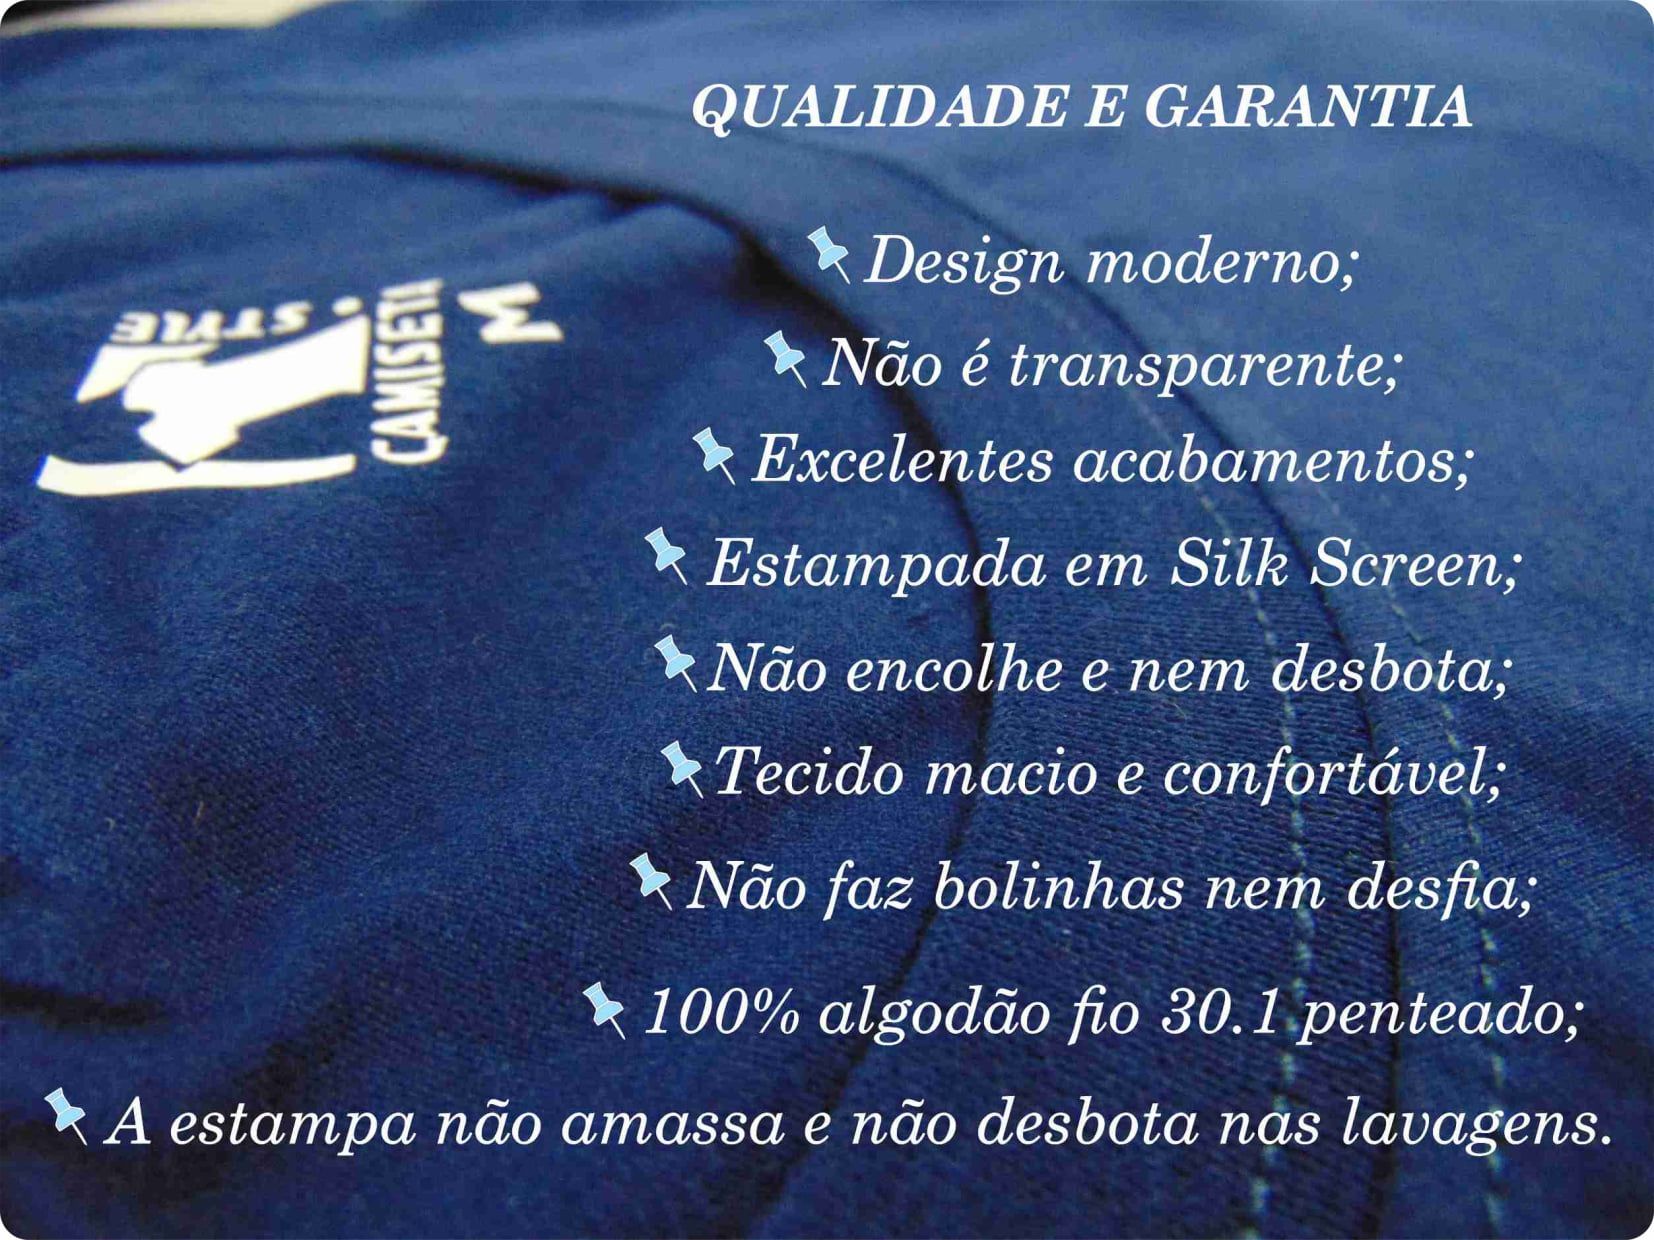 Camiseta Sexta - Qualidade e garantia